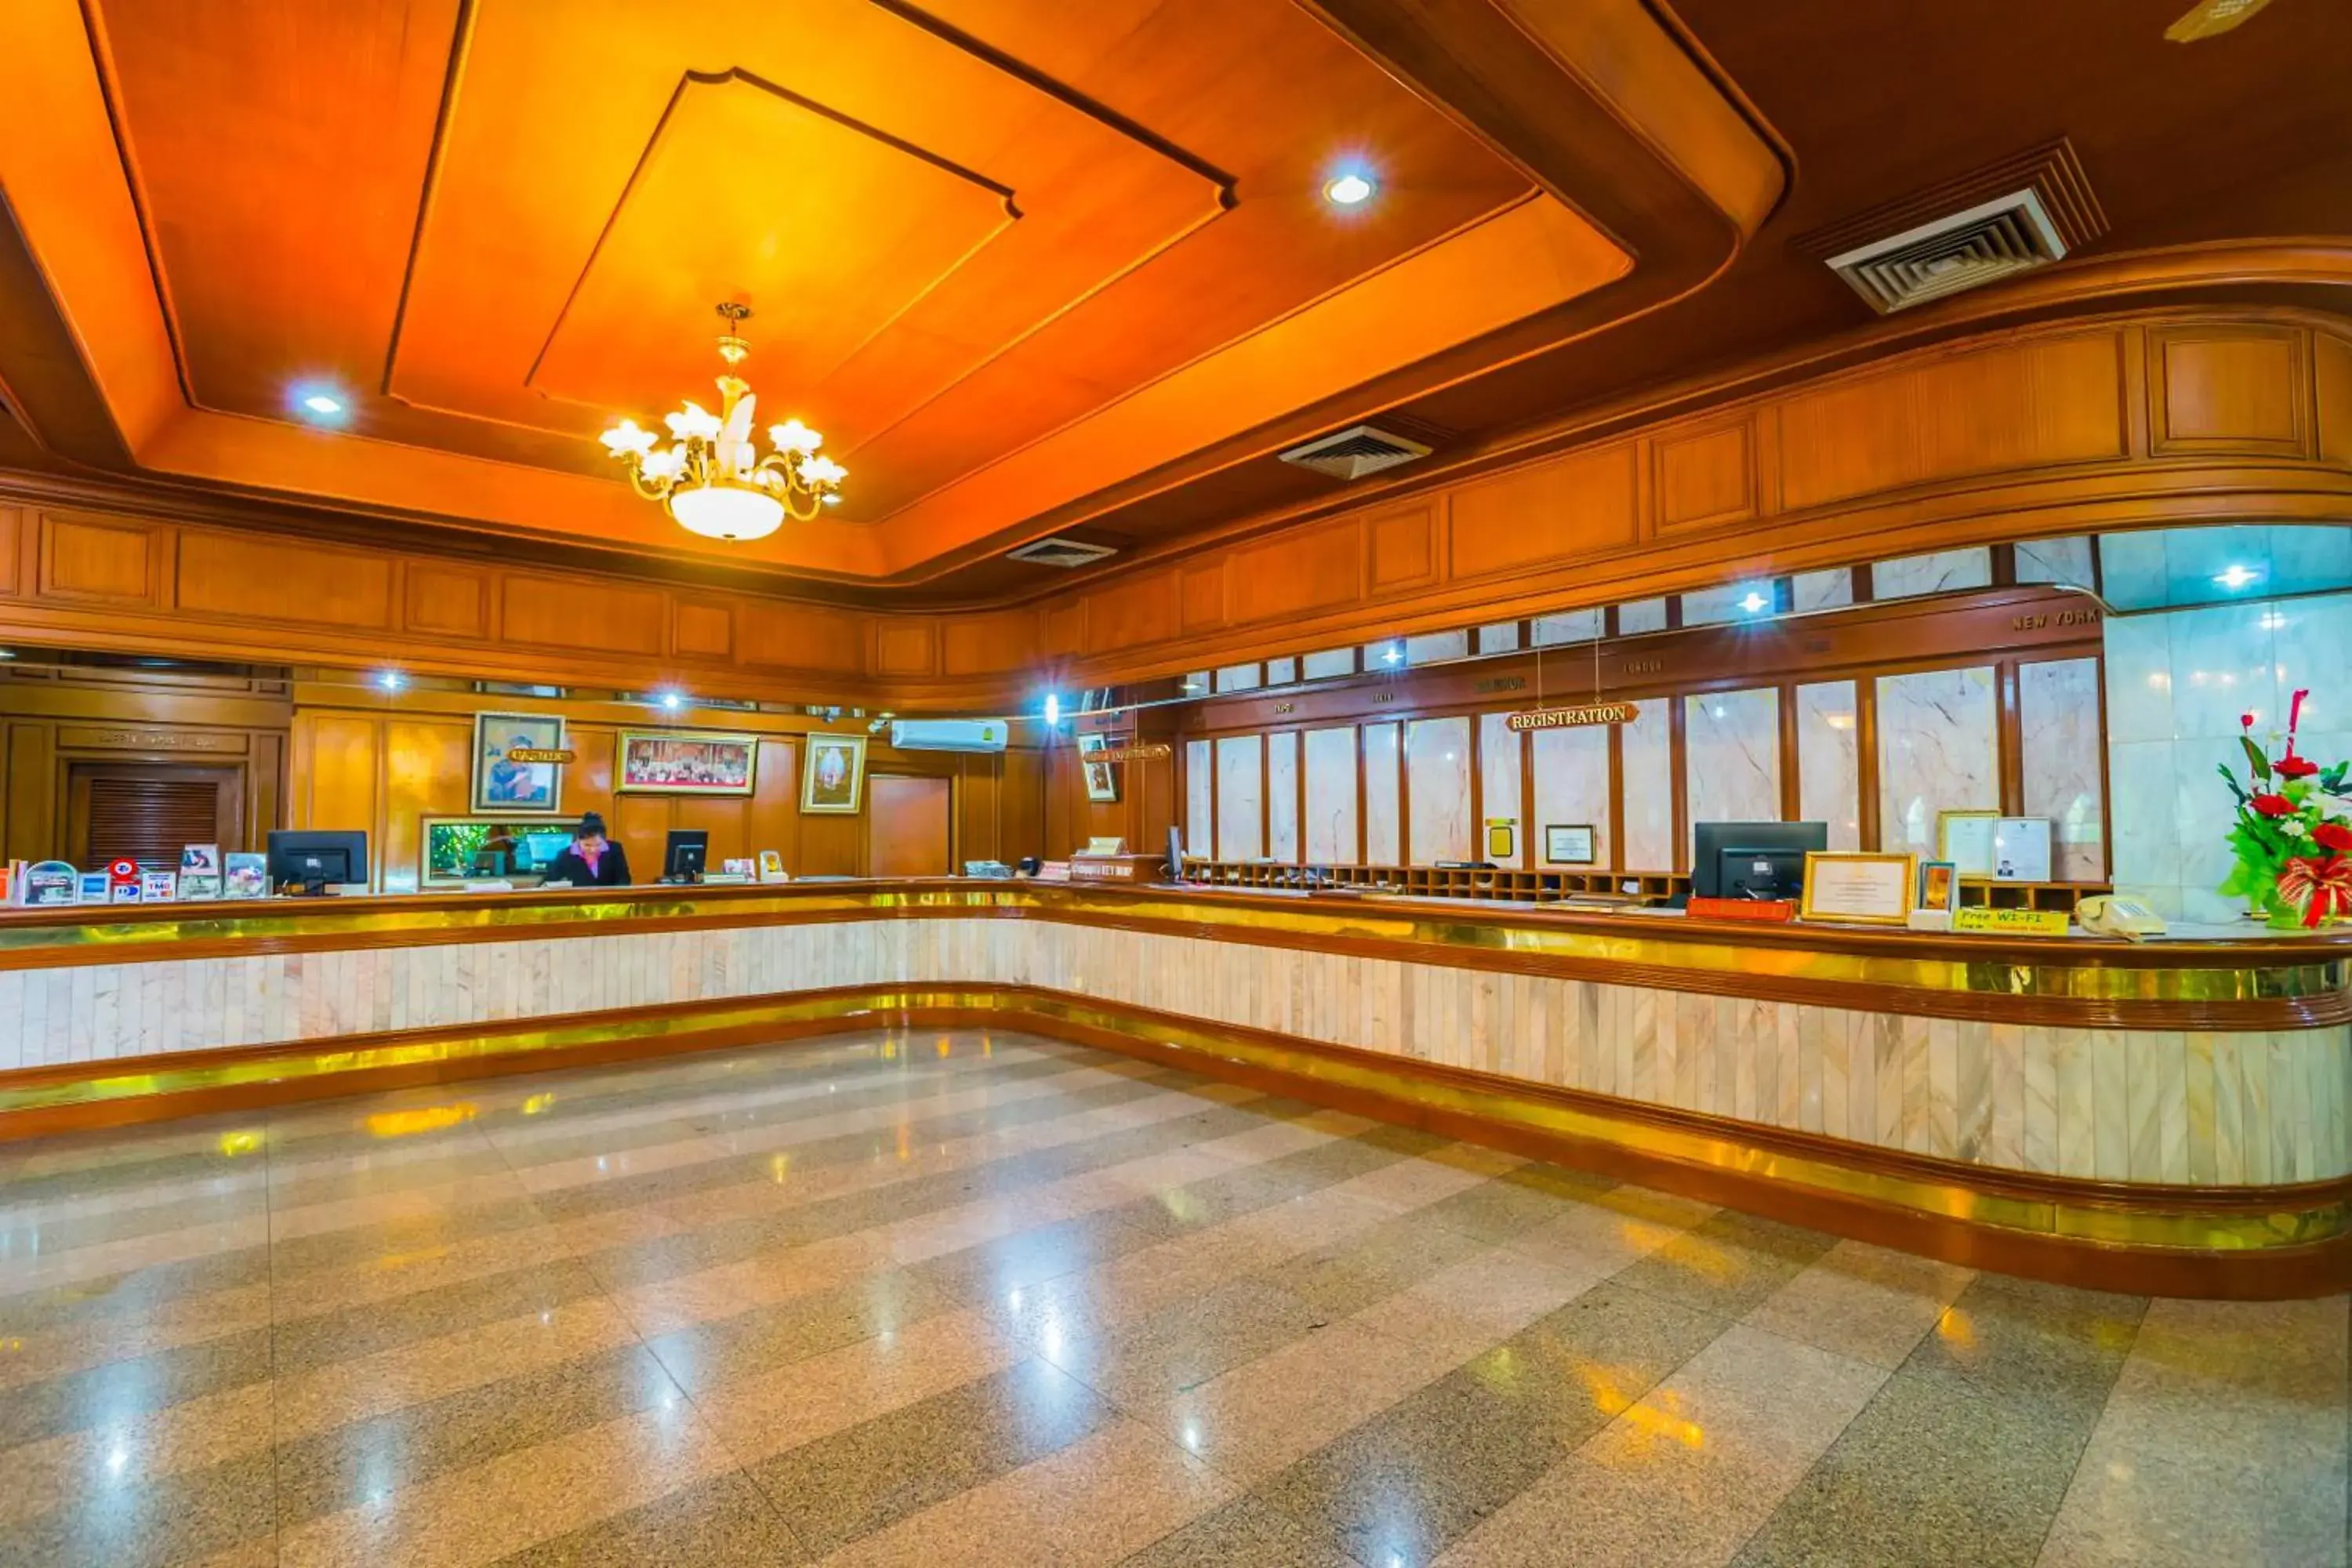 Lobby or reception in Elizabeth Hotel